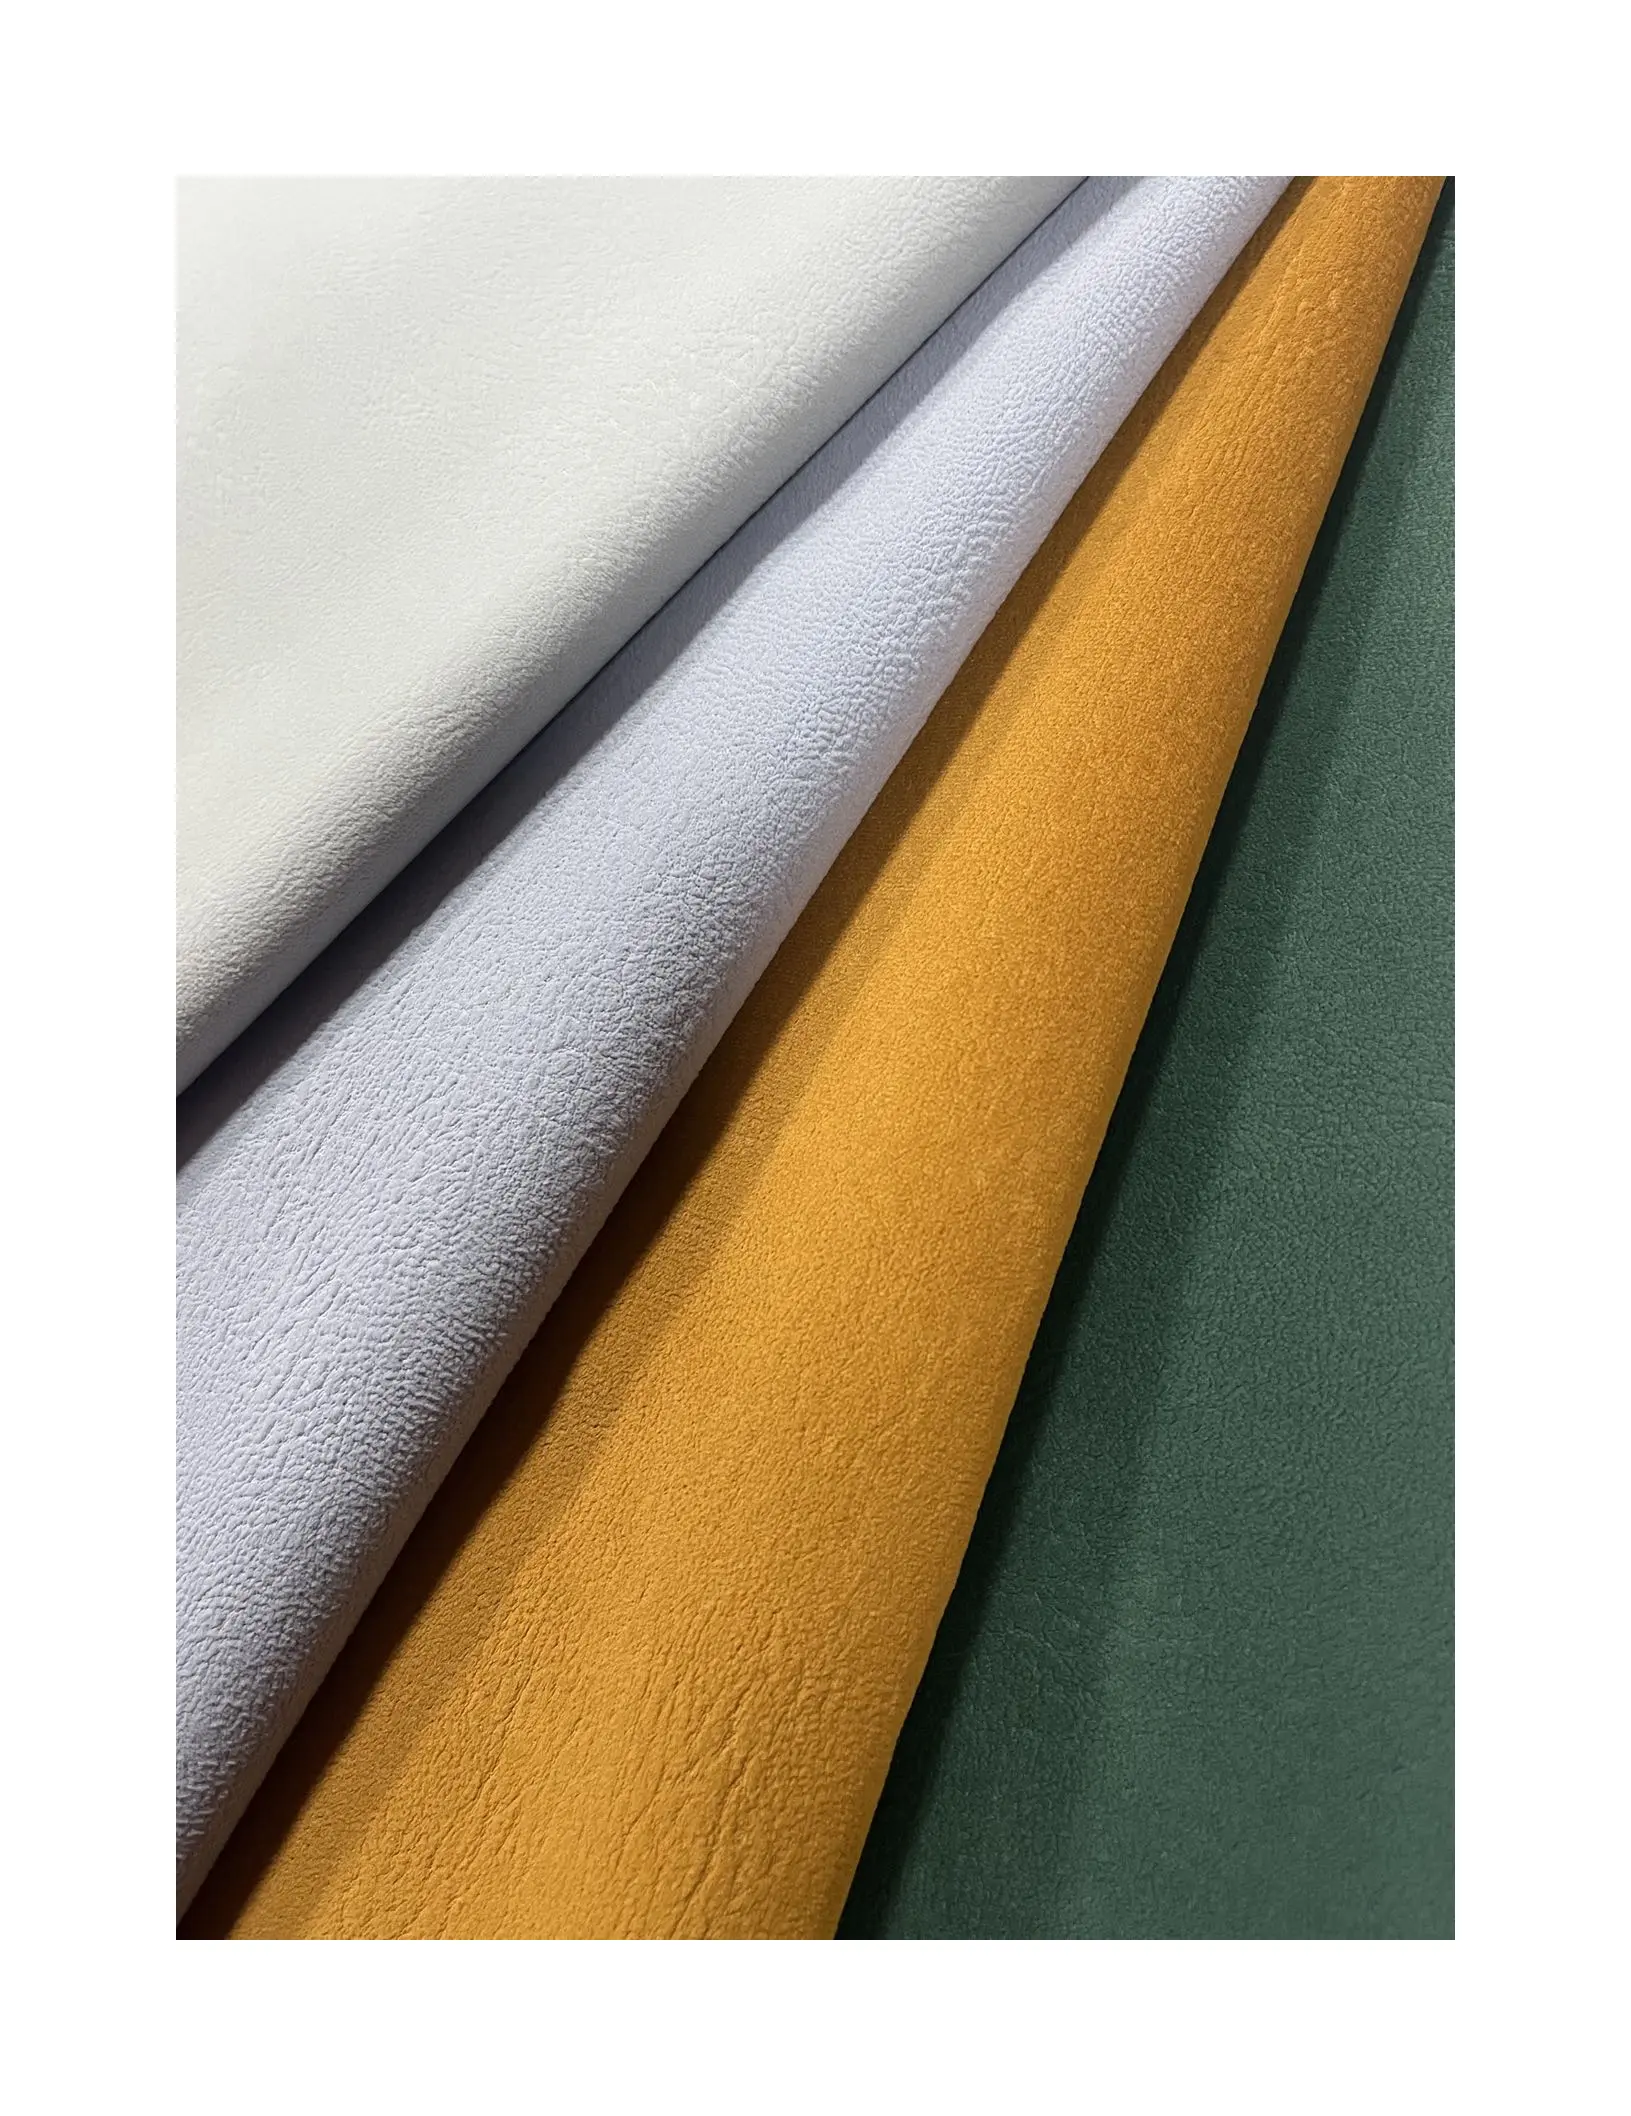 Langsum#JULIA#Embossed velvet sofa fabric velvet home textile fabric apply to living room mattress cushion curtain